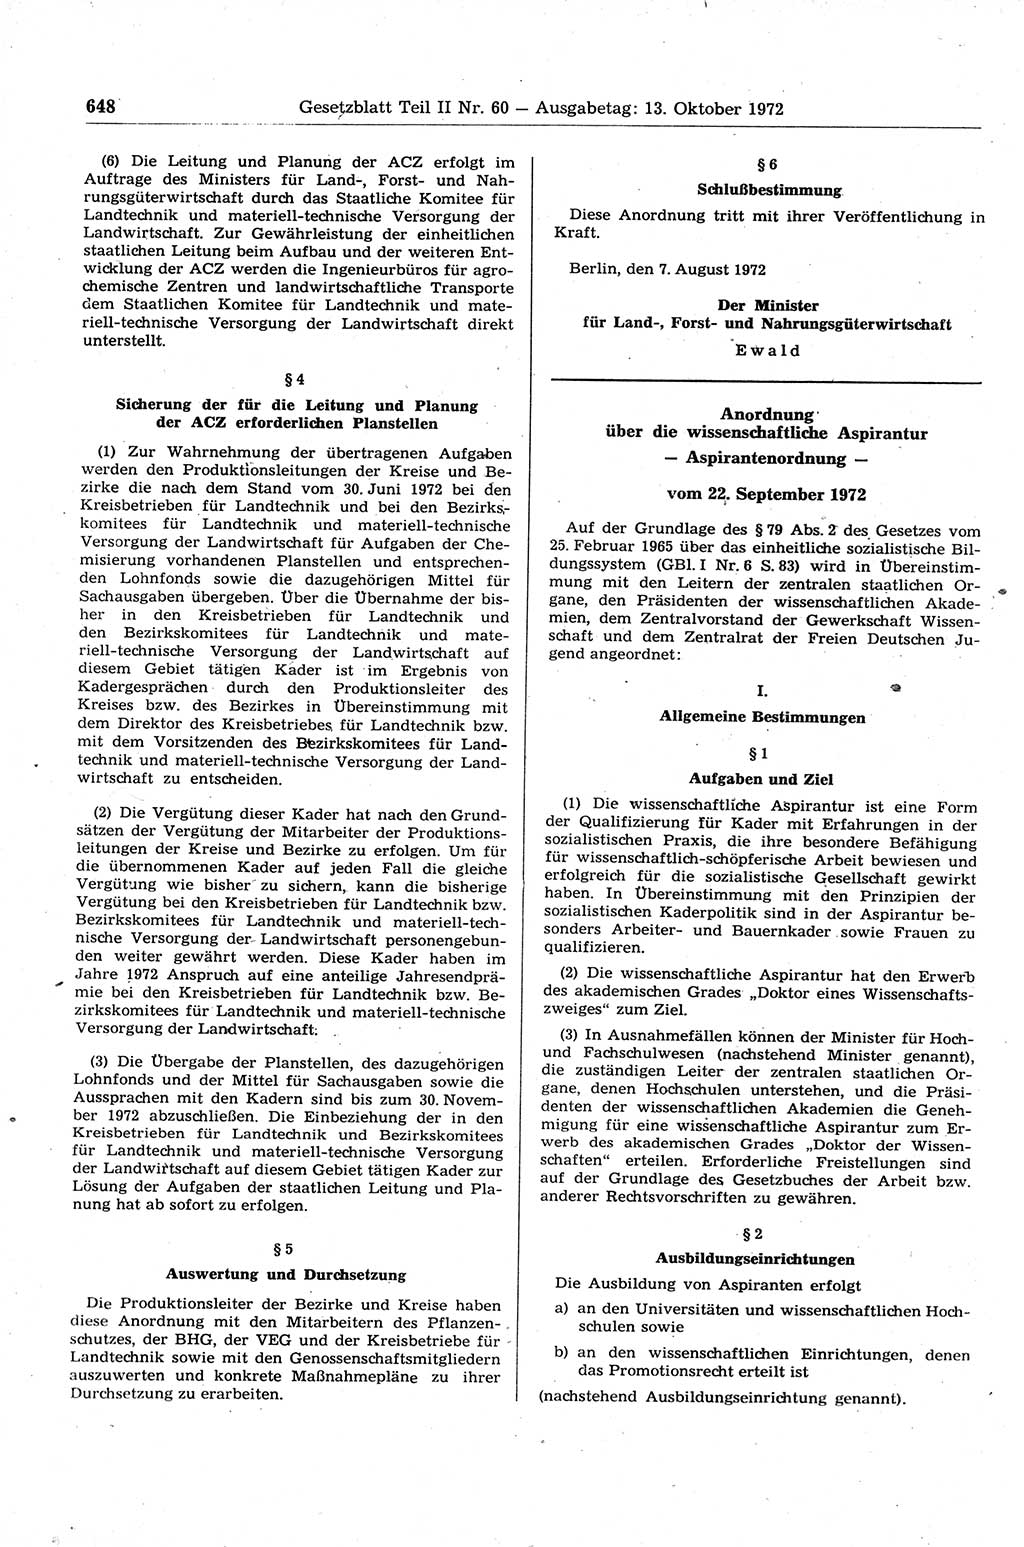 Gesetzblatt (GBl.) der Deutschen Demokratischen Republik (DDR) Teil ⅠⅠ 1972, Seite 648 (GBl. DDR ⅠⅠ 1972, S. 648)